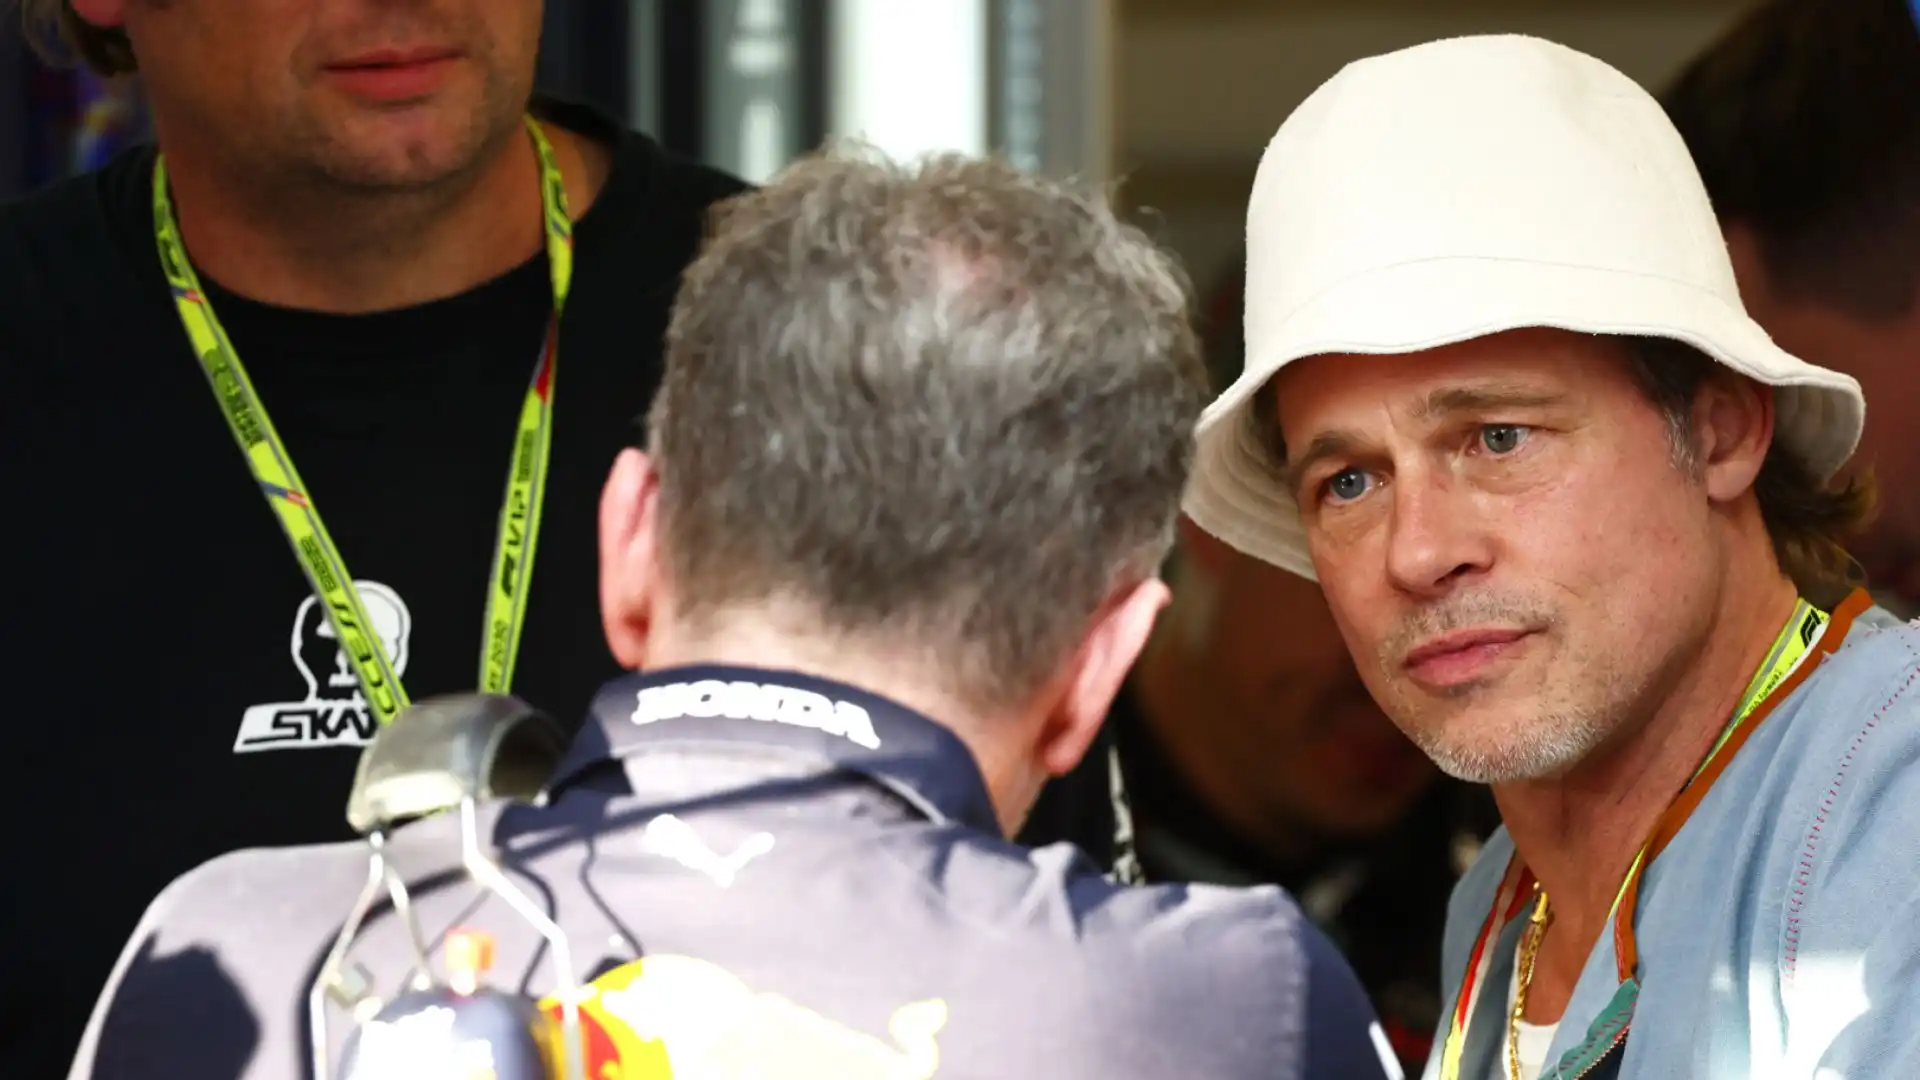 Pitt ha fatto una passeggiata nel paddock, per studiare la F1 in vista del suo prossimo film